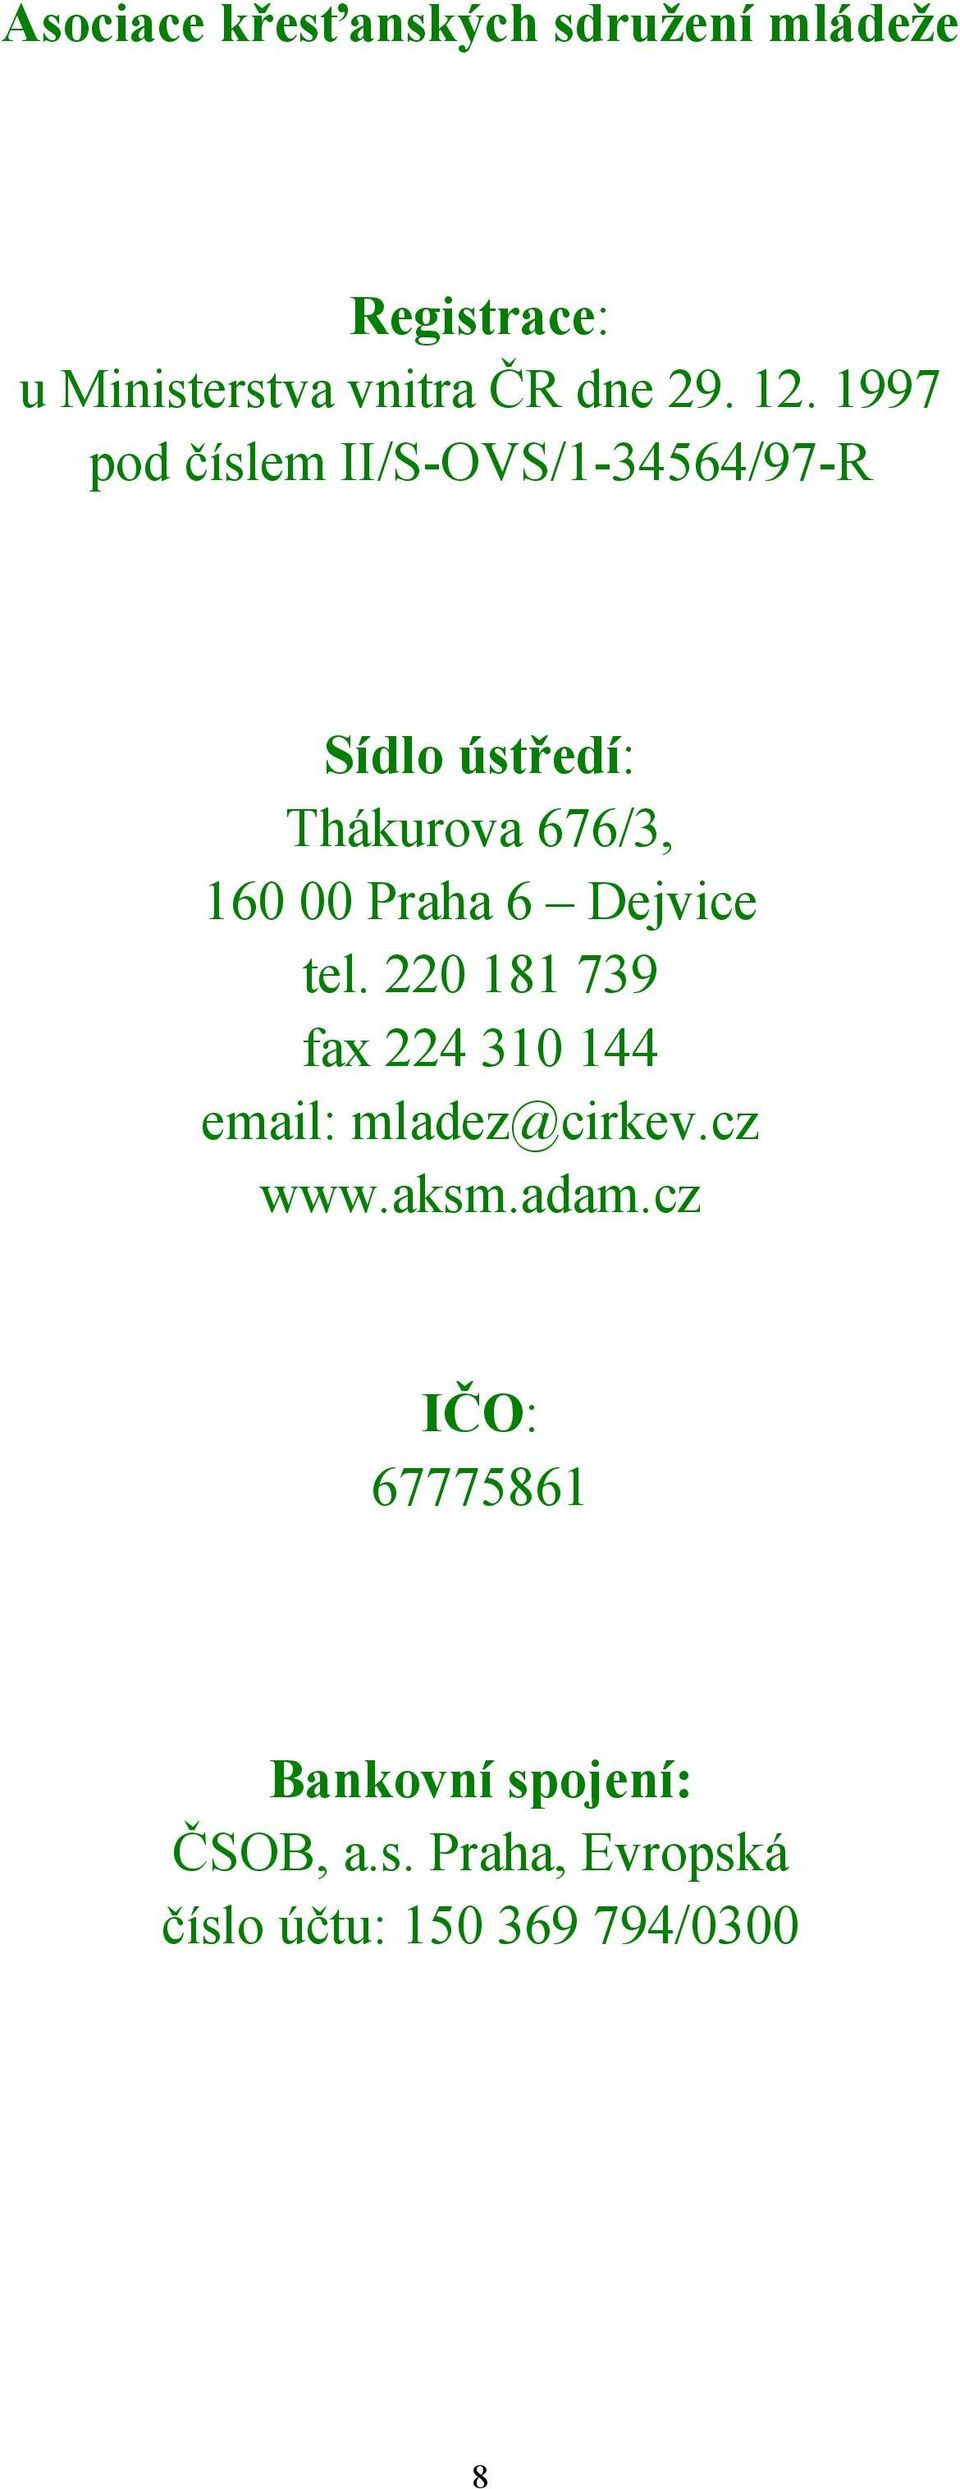 Praha 6 Dejvice tel. 220 181 739 fax 224 310 144 email: mladez@cirkev.cz www.aksm.